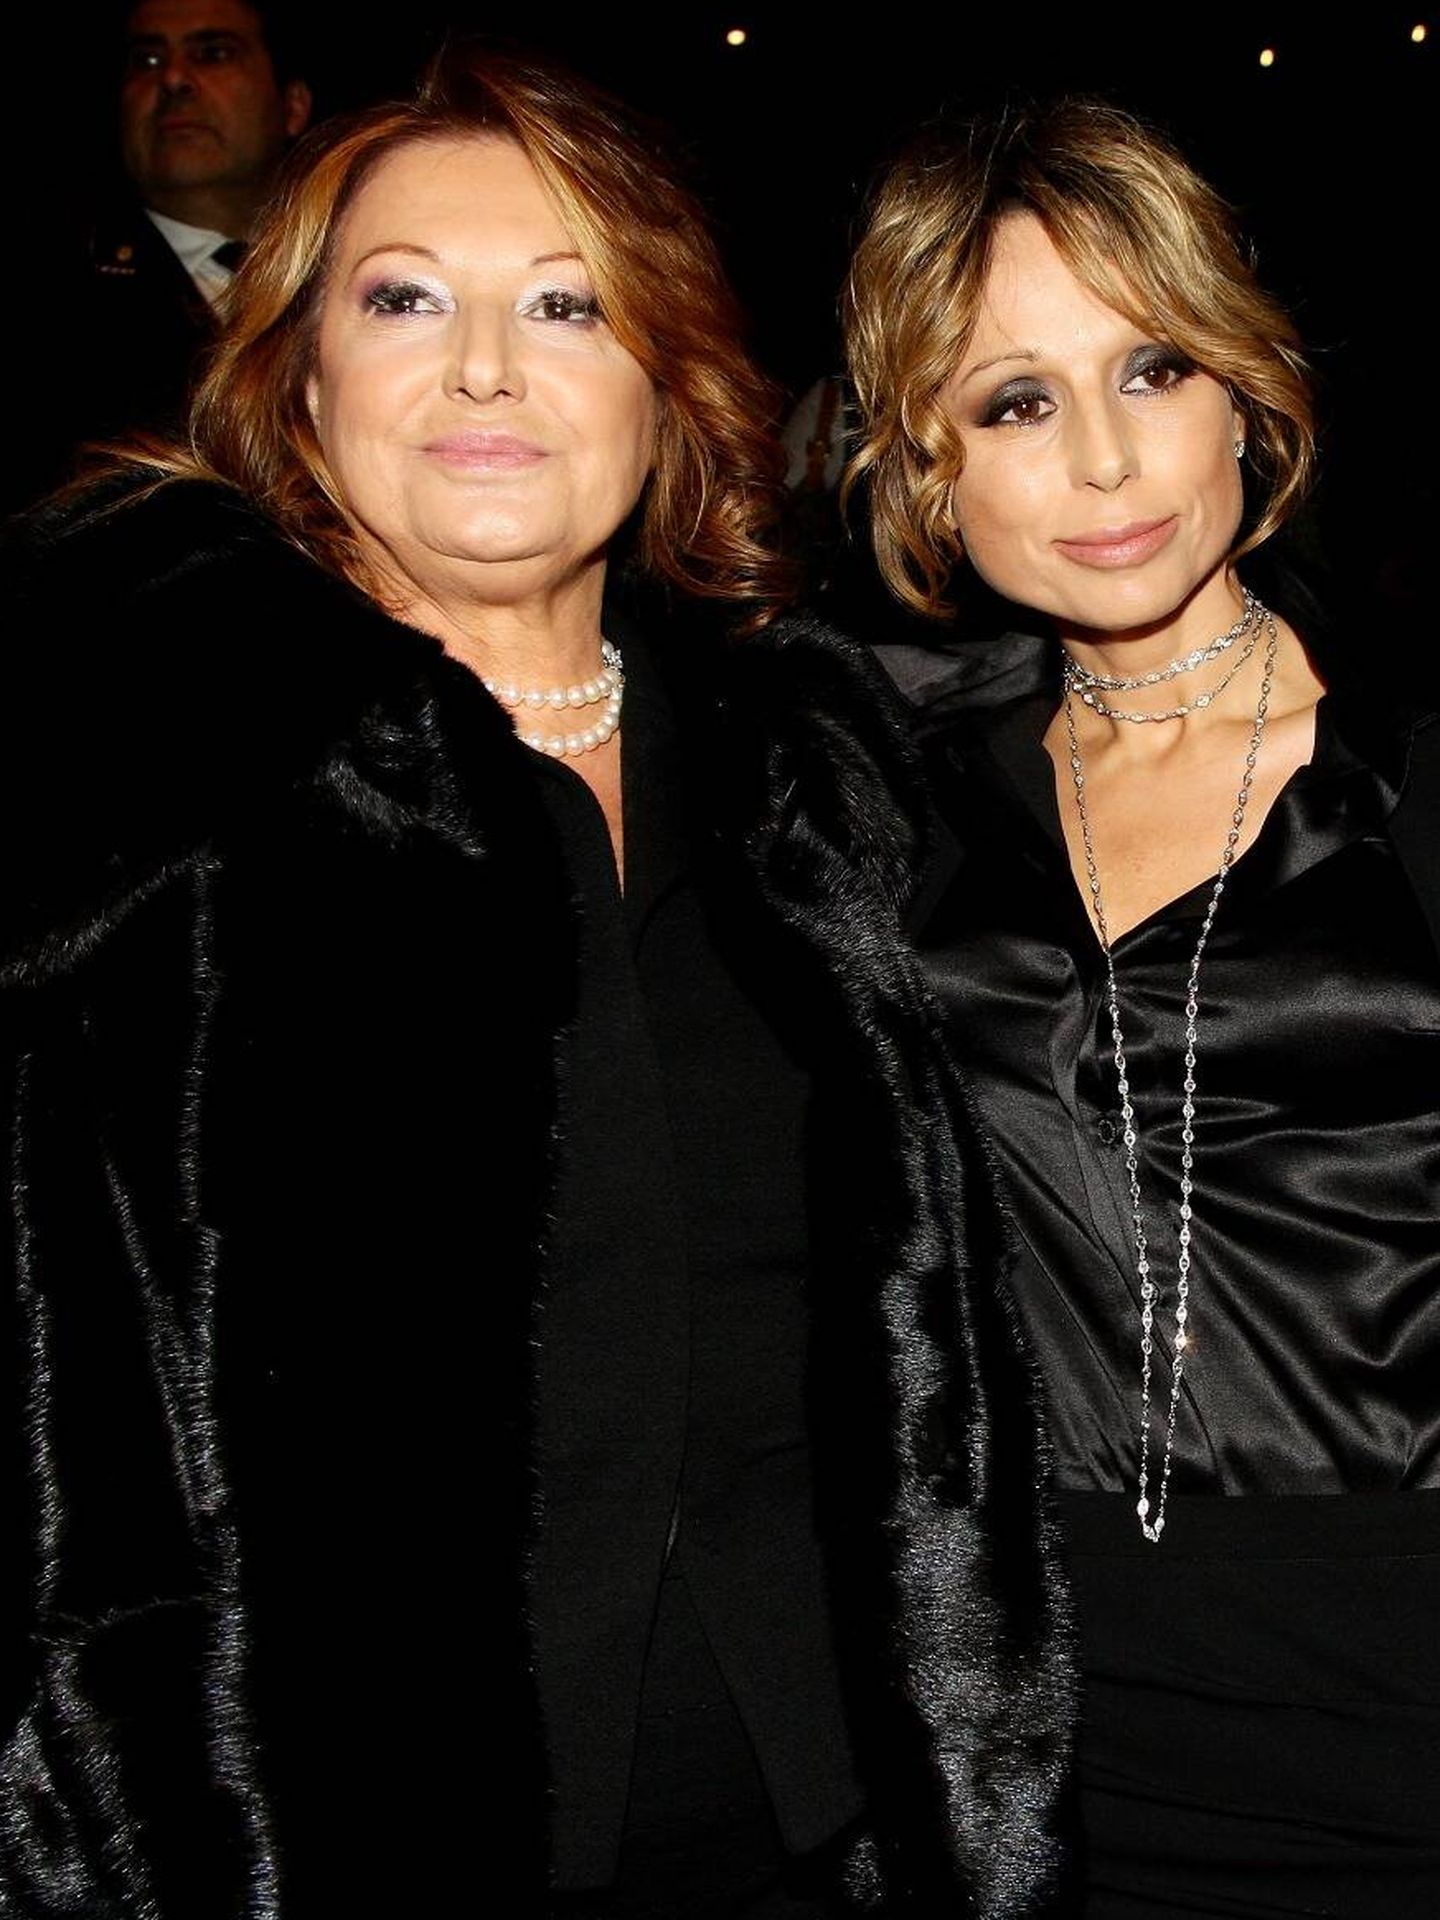 Marina Berlusconi y su madre, Carla Elvira Lucia Dall'Oglio. (Getty/Vittorio Zunino Celotto)